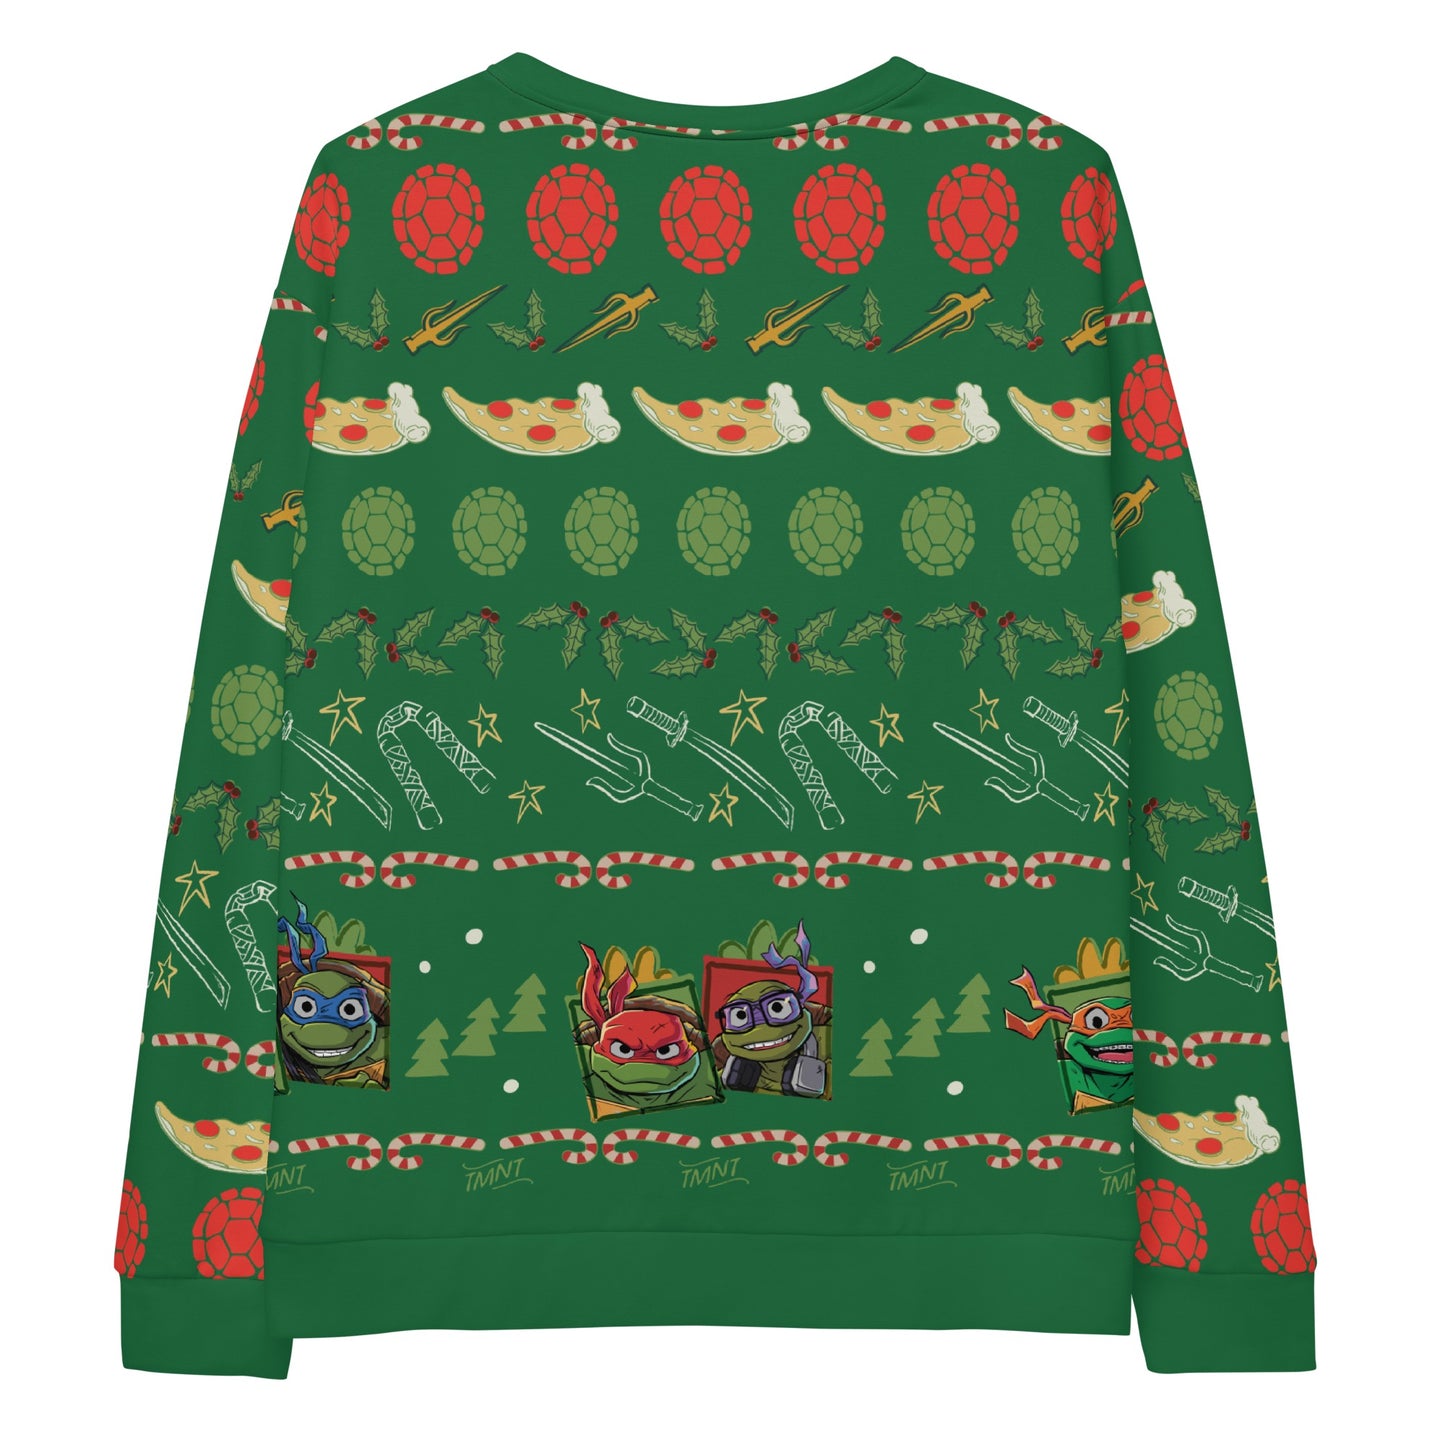 Teenage Mutant Ninja Turtles Christmas Adult Crewneck Sweatshirt